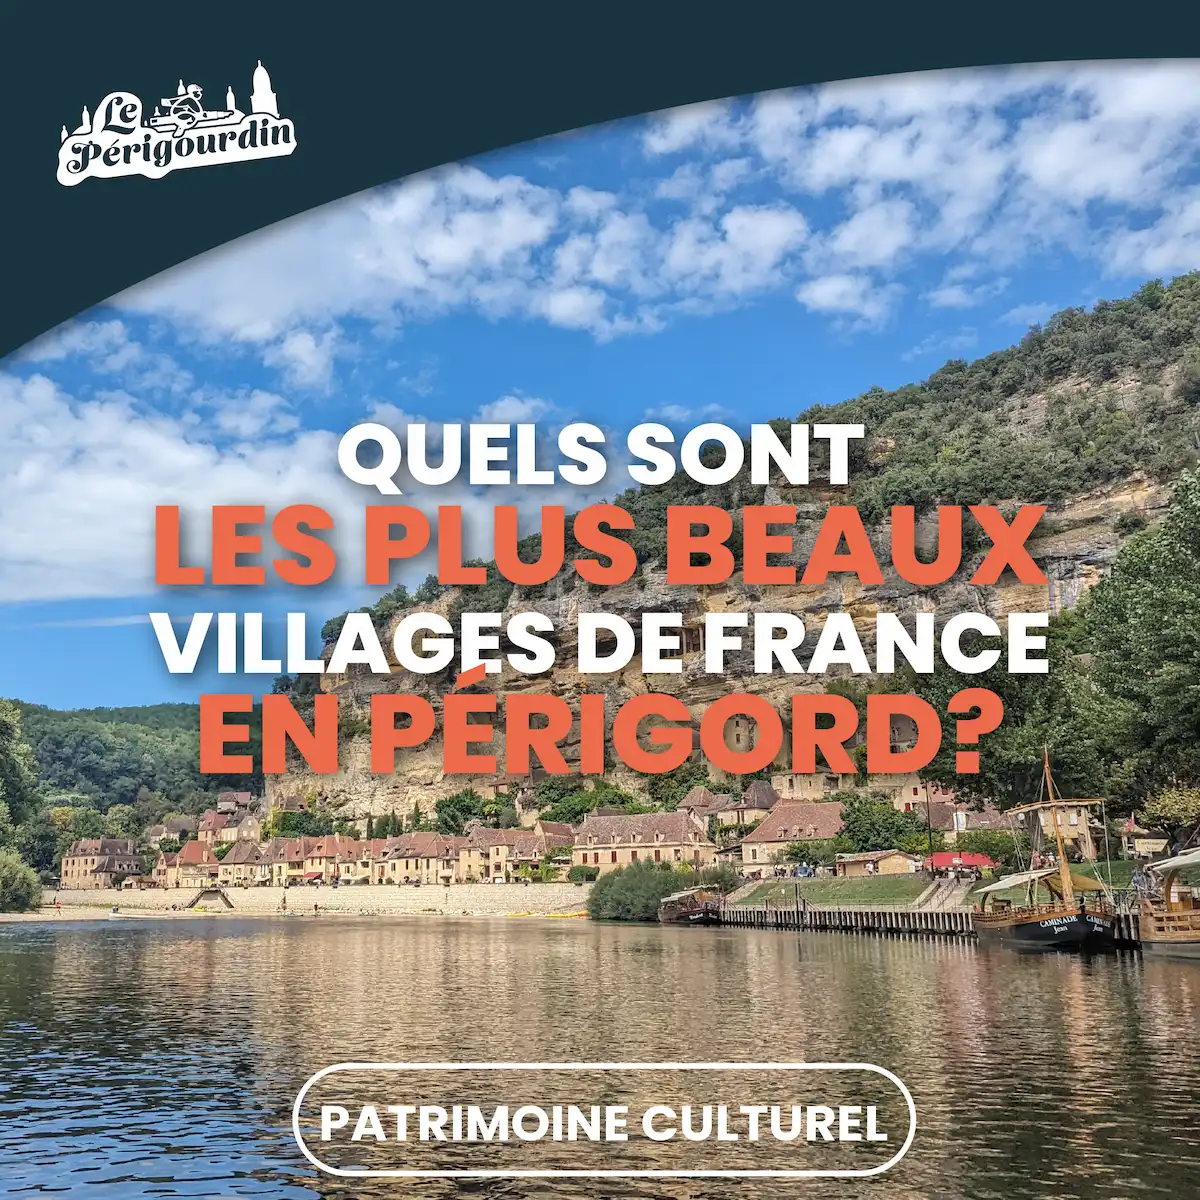 Les Plus Beaux Villages de France en Périgord